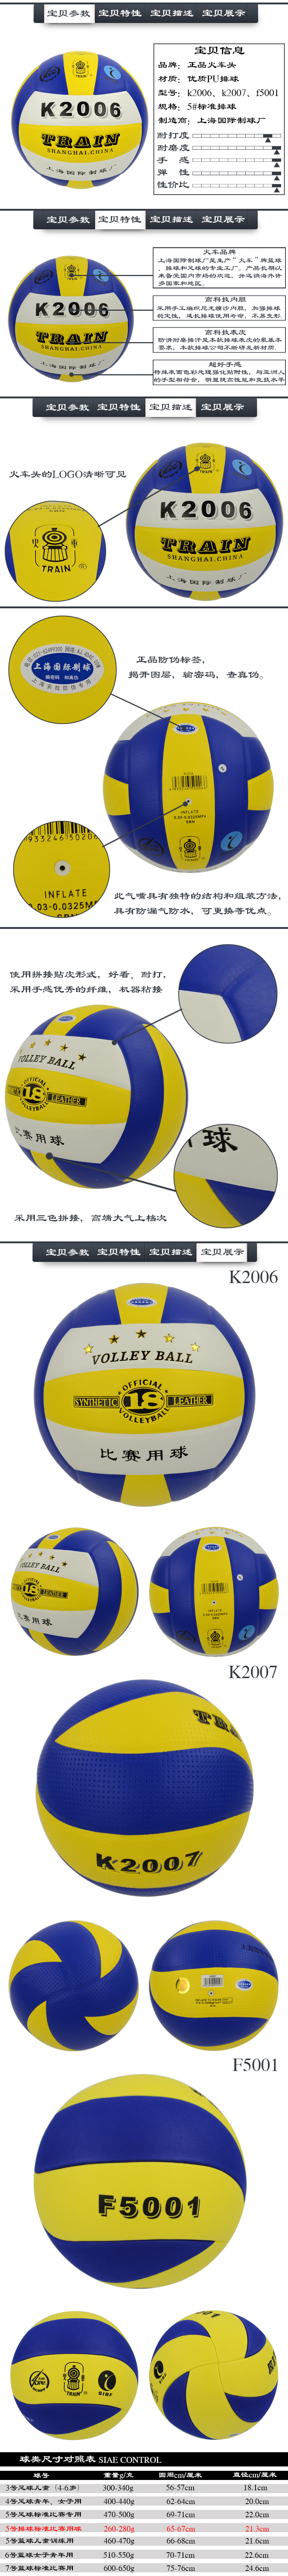 Ballon de volley-ball - Ref 2016735 Image 27